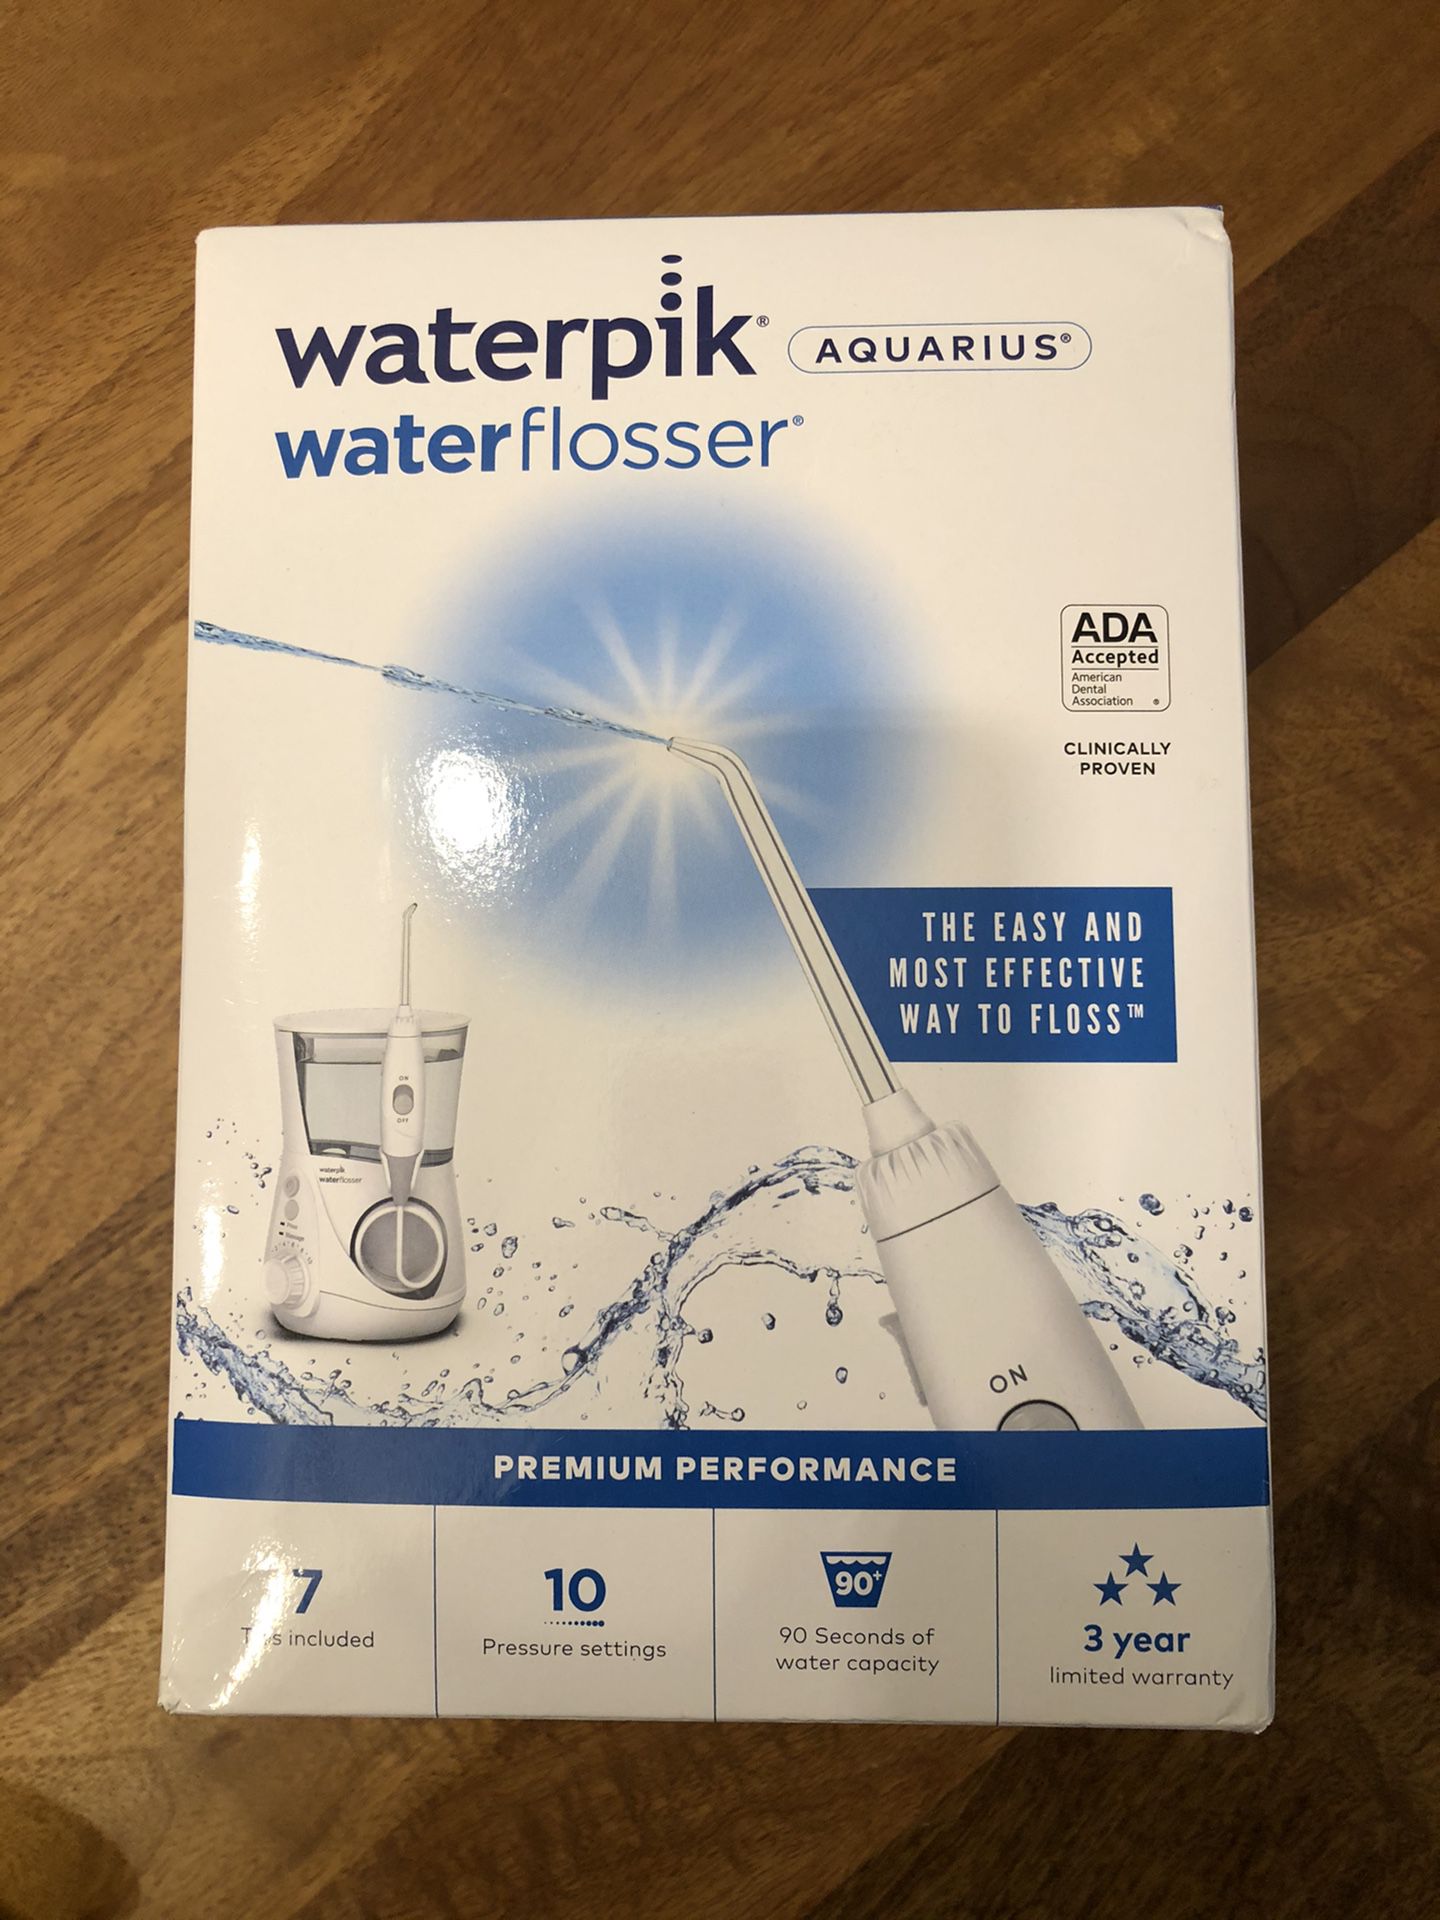 Waterpik Water Flosser - Brand New Sealed In Box!